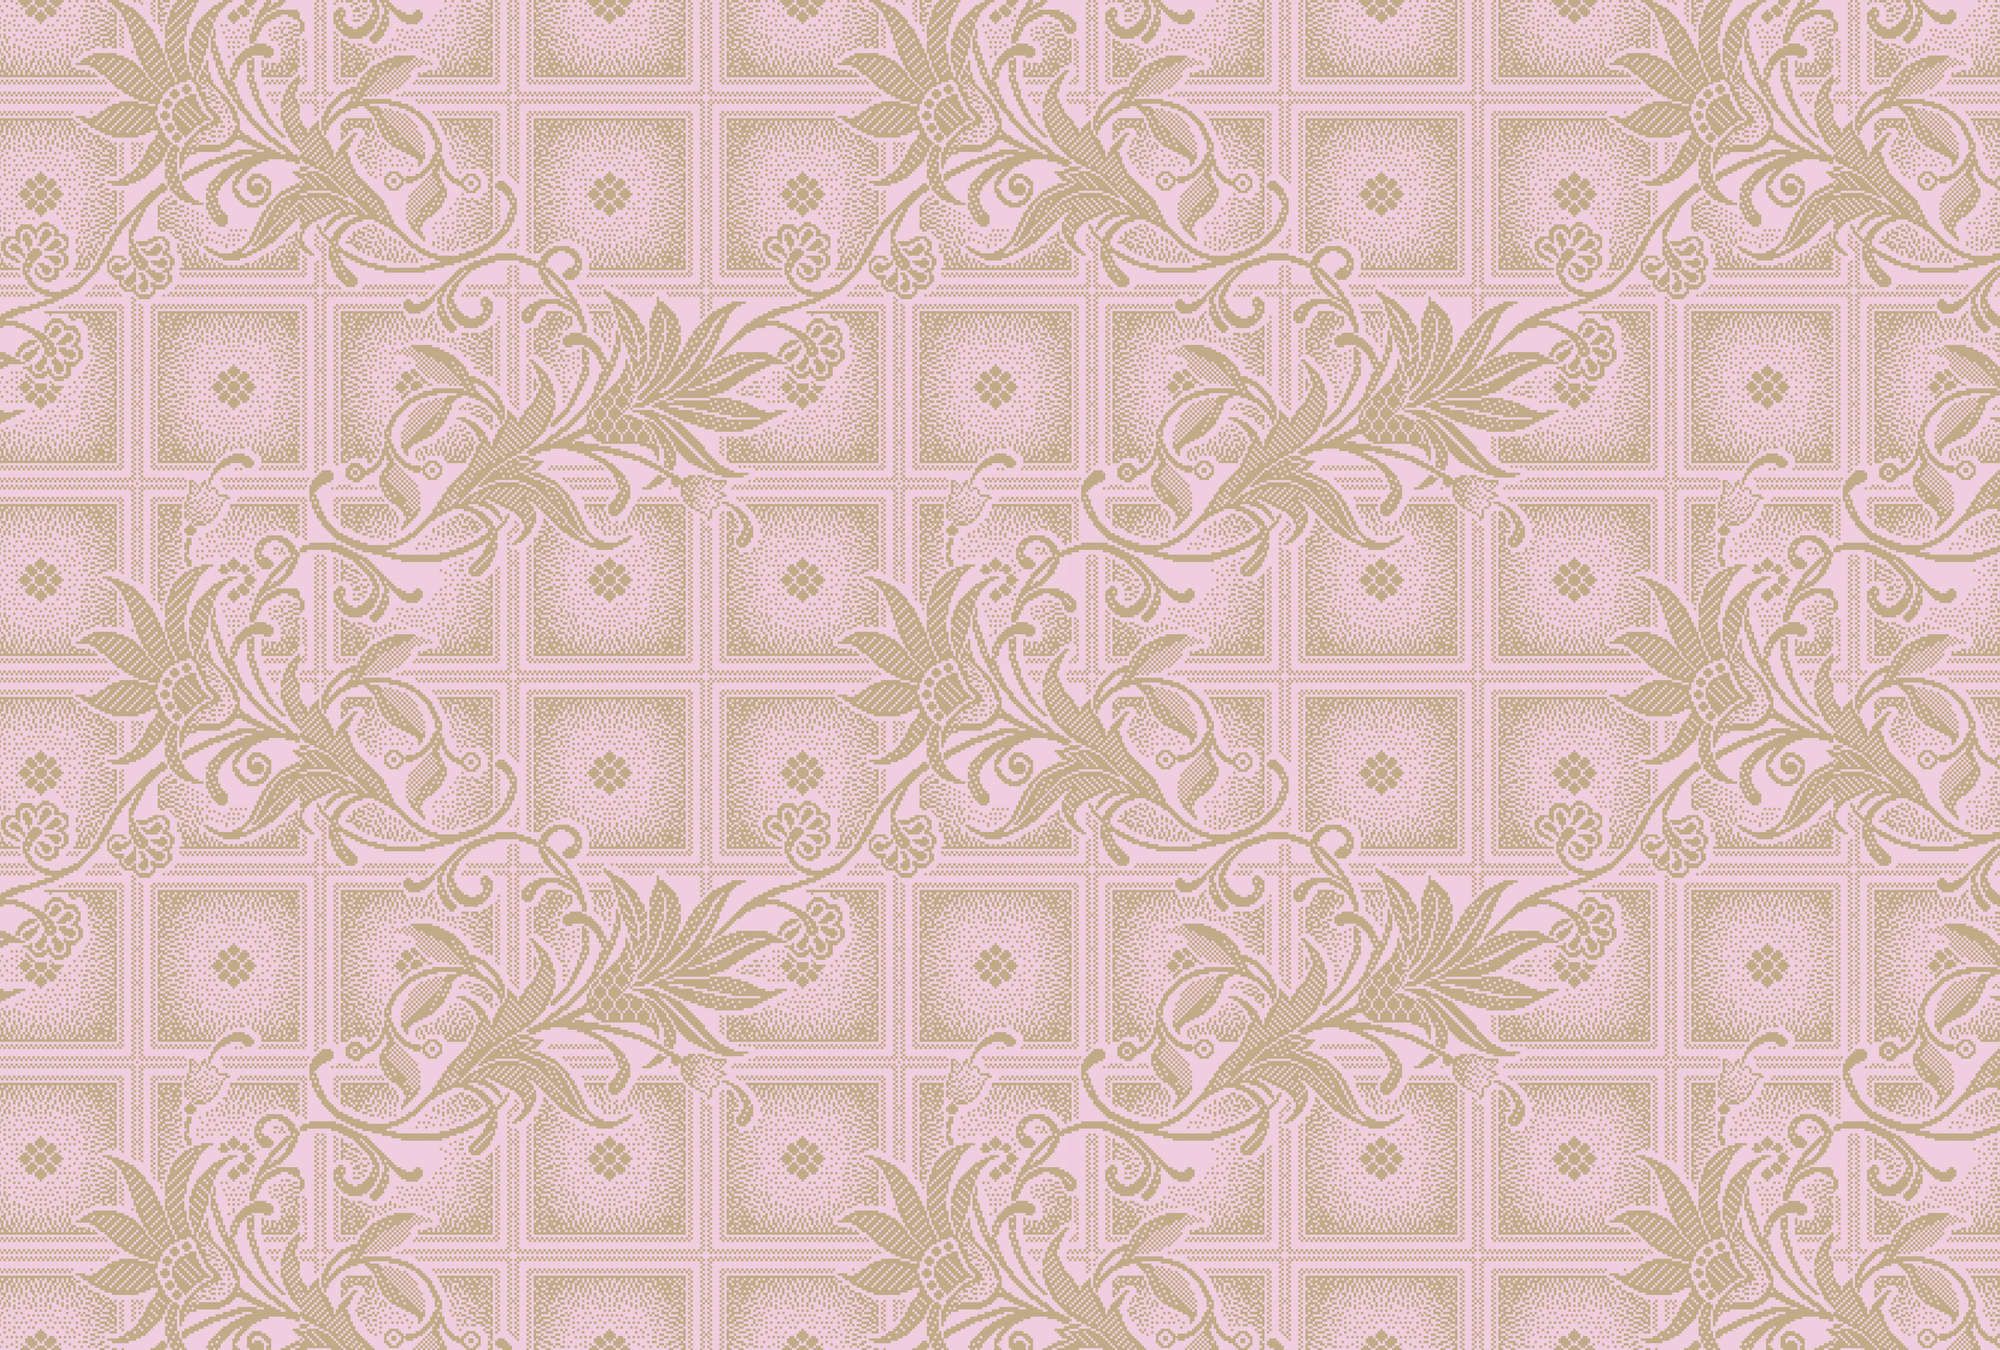             Fotomurali »vivian« - Quadrati in stile pixel con fiori - Rosa | Materiali non tessuto liscio, leggermente perlato e scintillante
        